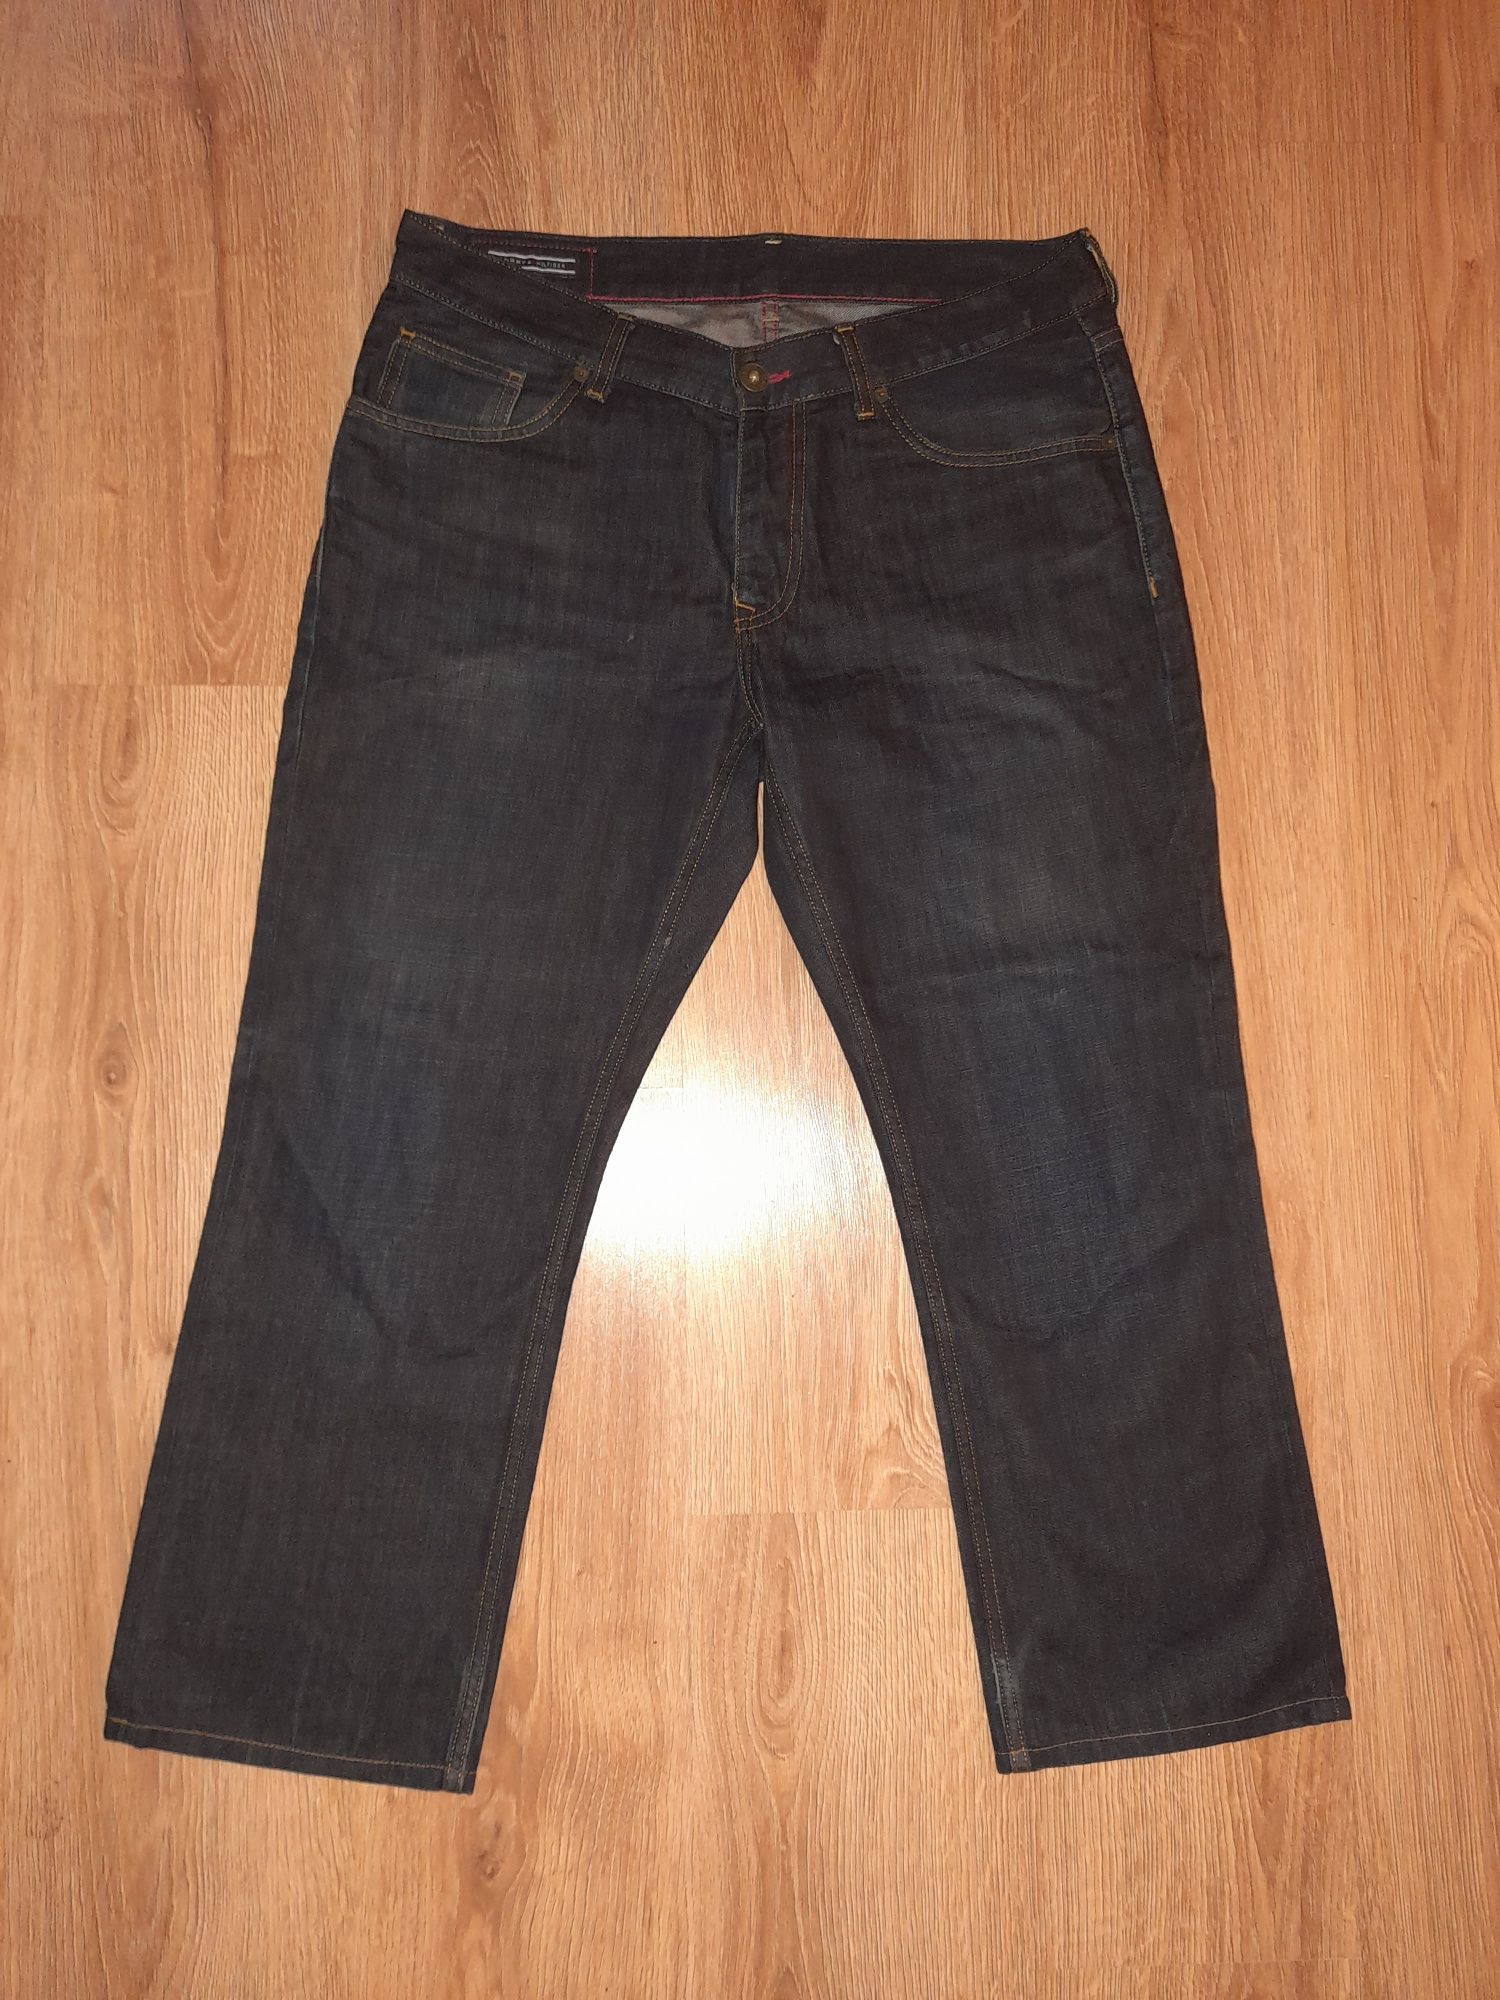 Tommy Hilfiger spodnie jeansowe W34 L30